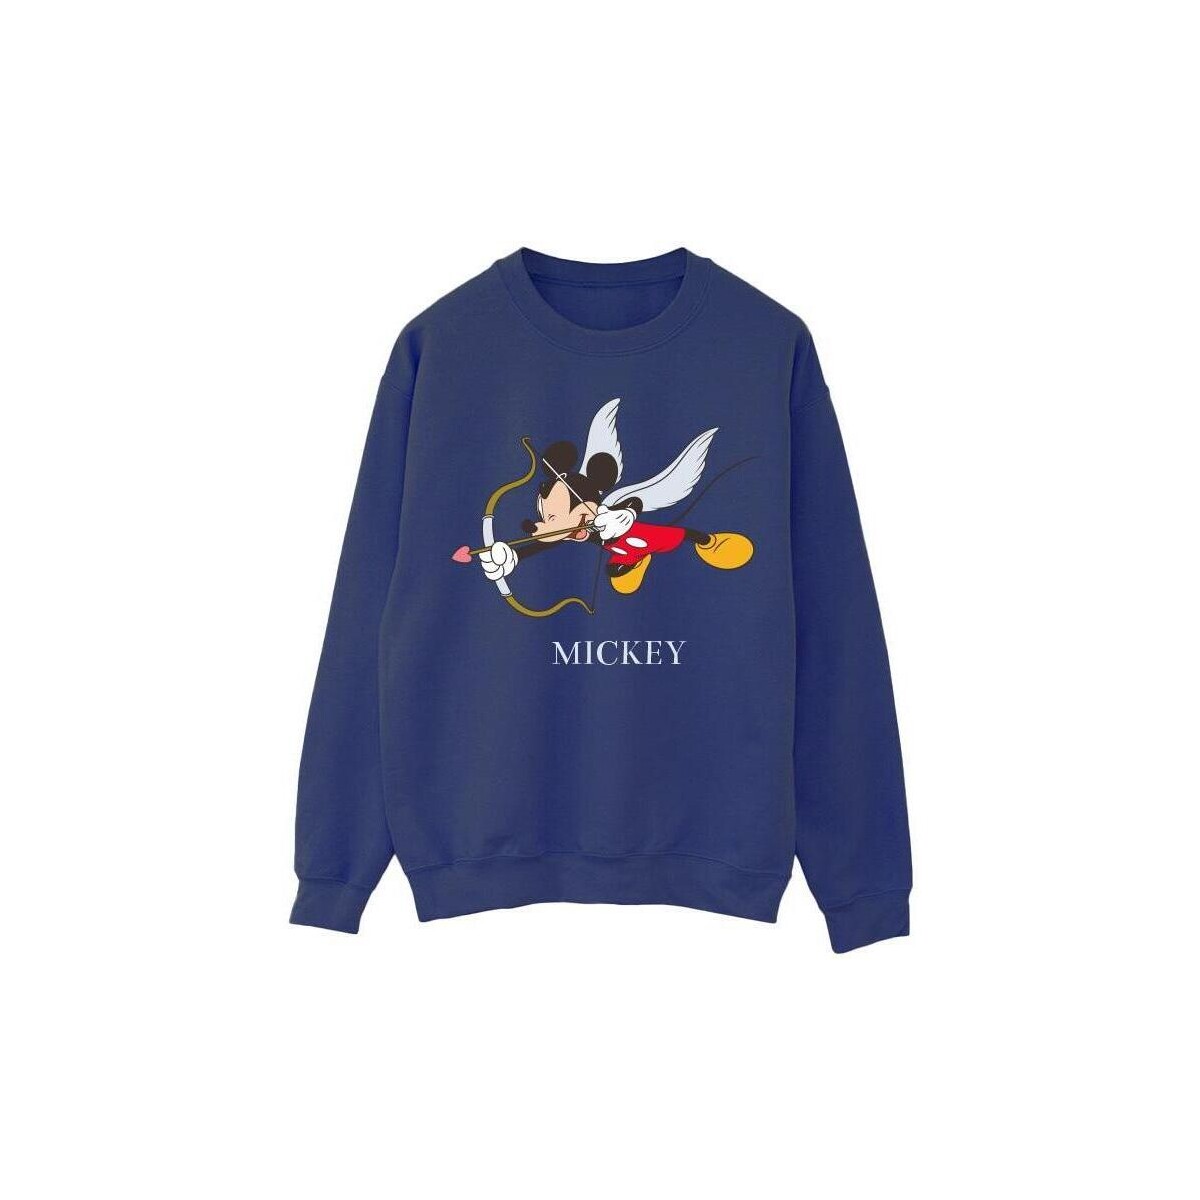 Vêtements Femme Sweats Disney Mickey Mouse Love Cherub Bleu